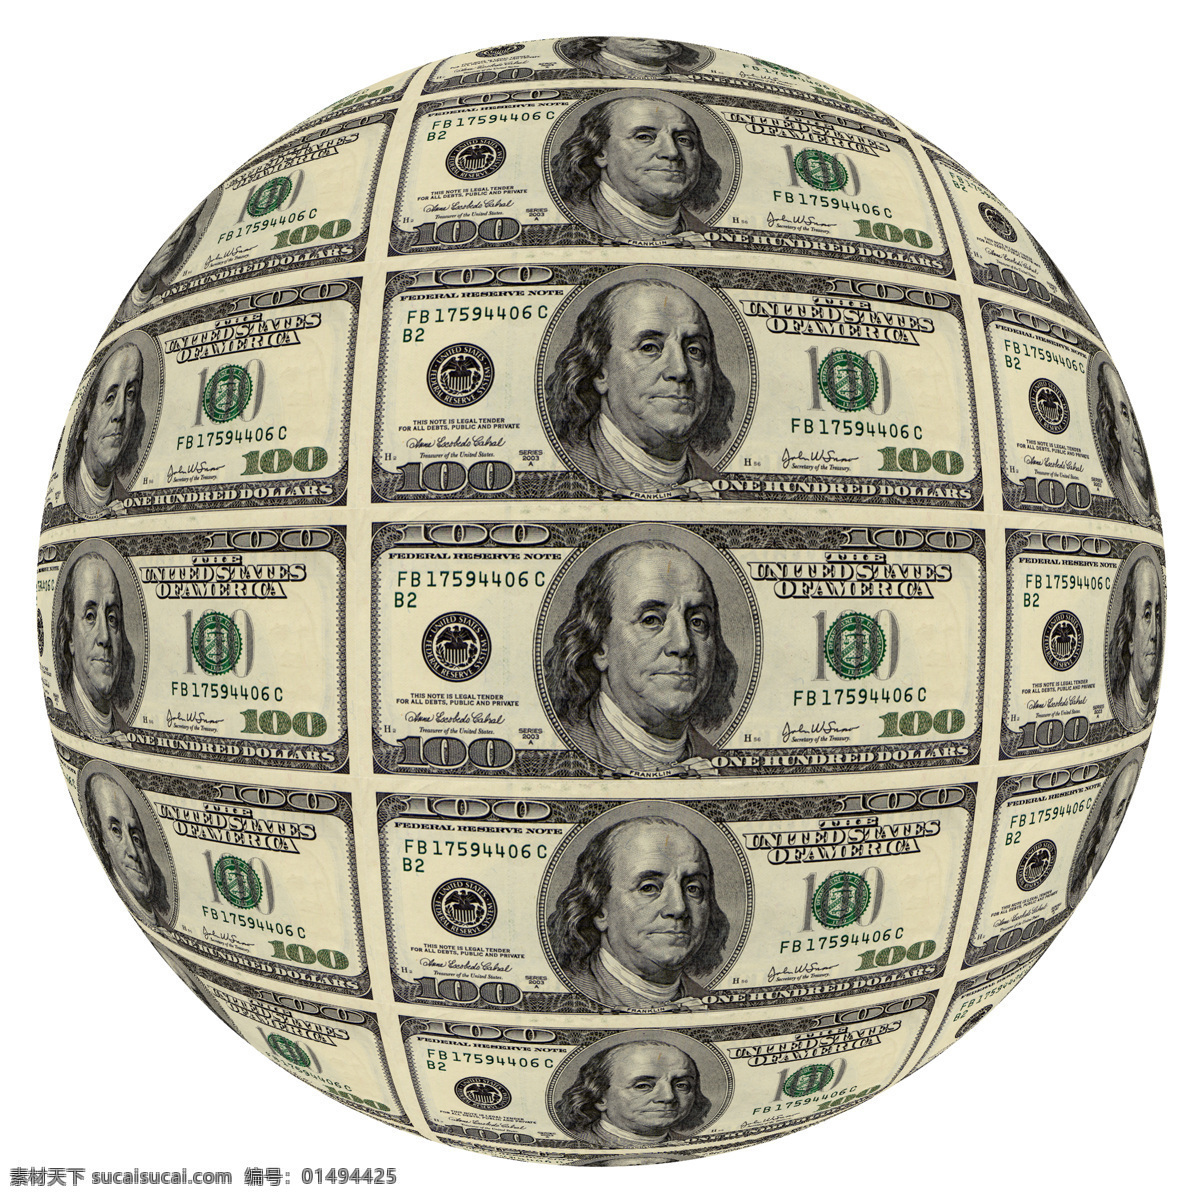 球形美金 美元 美钞 钞票 货币 纸币 钱 美金 货币高清图片 金融货币 商务金融 欧元